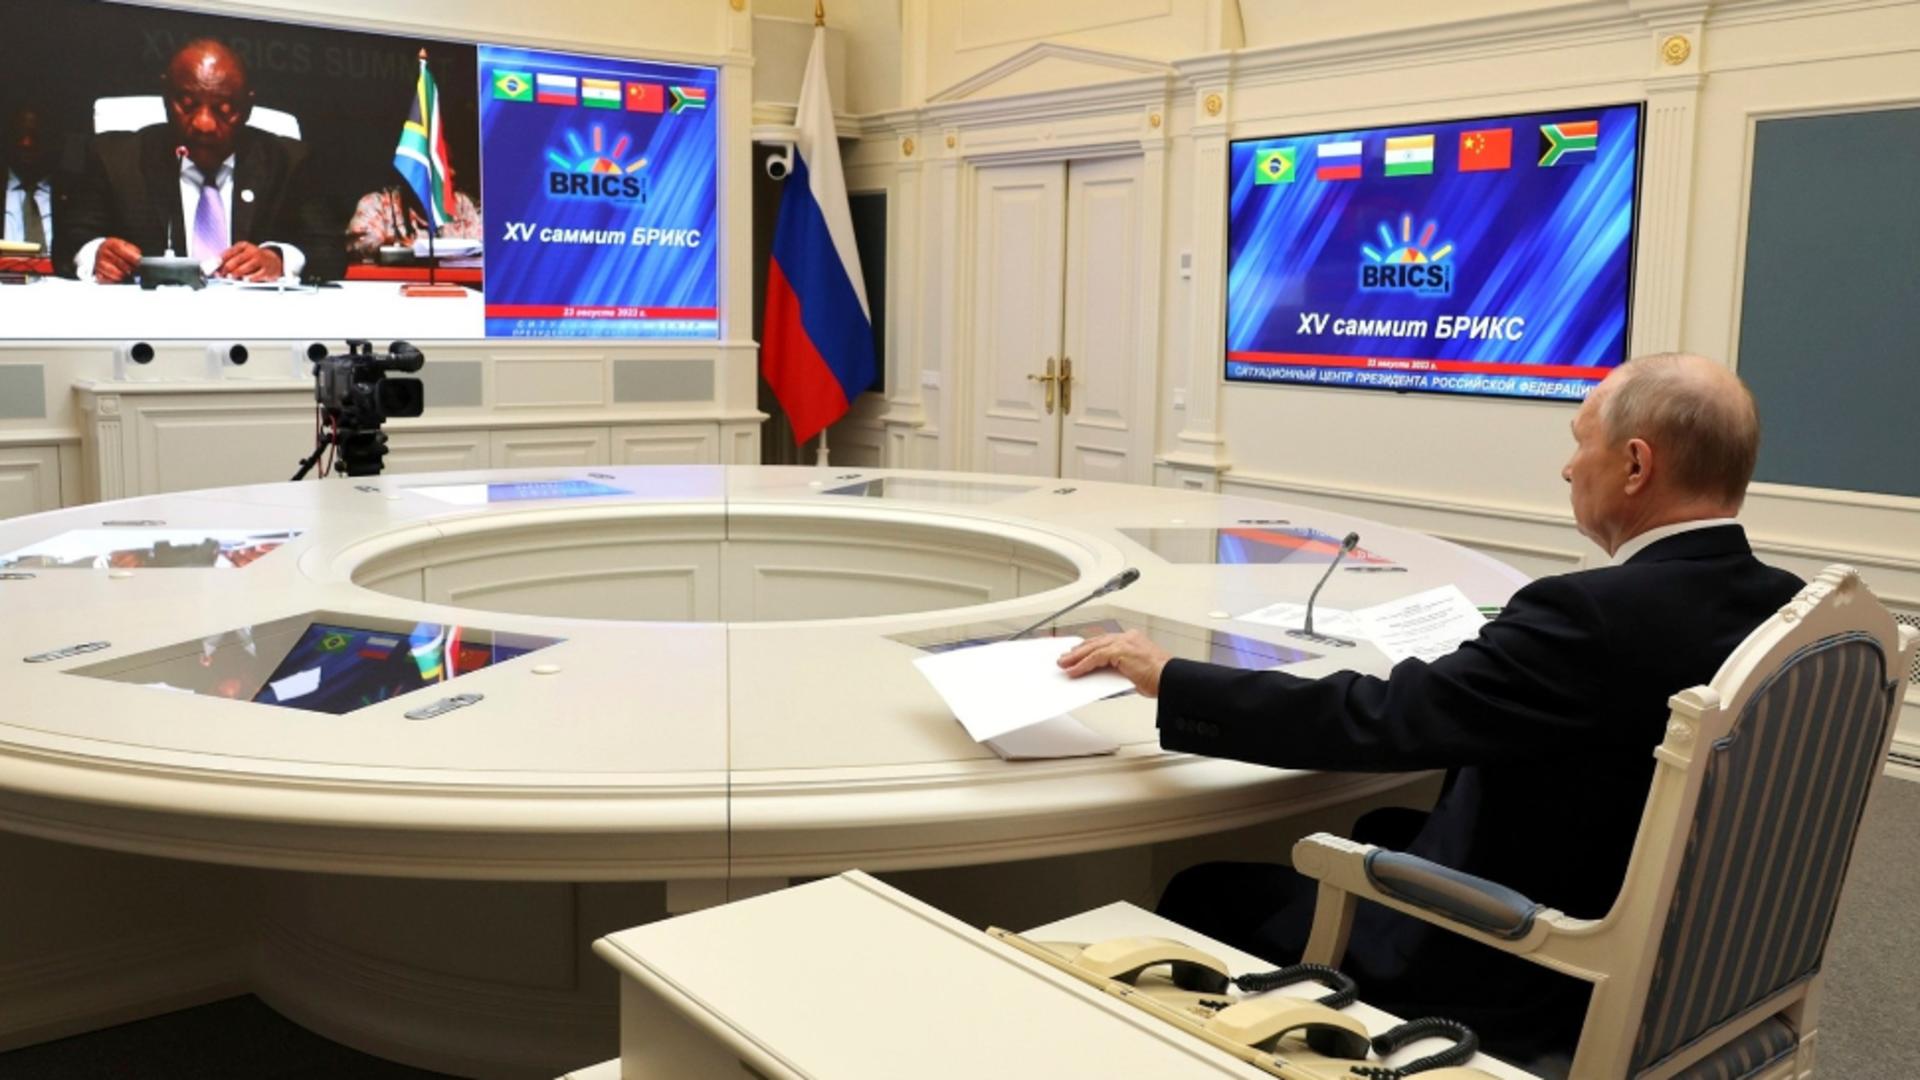 BRICS, summitul marilor absenți. Putin a intrat prin videoconferință, Xi JinPing l-a trimis pe ministrul Comerțului să îi citească discursul